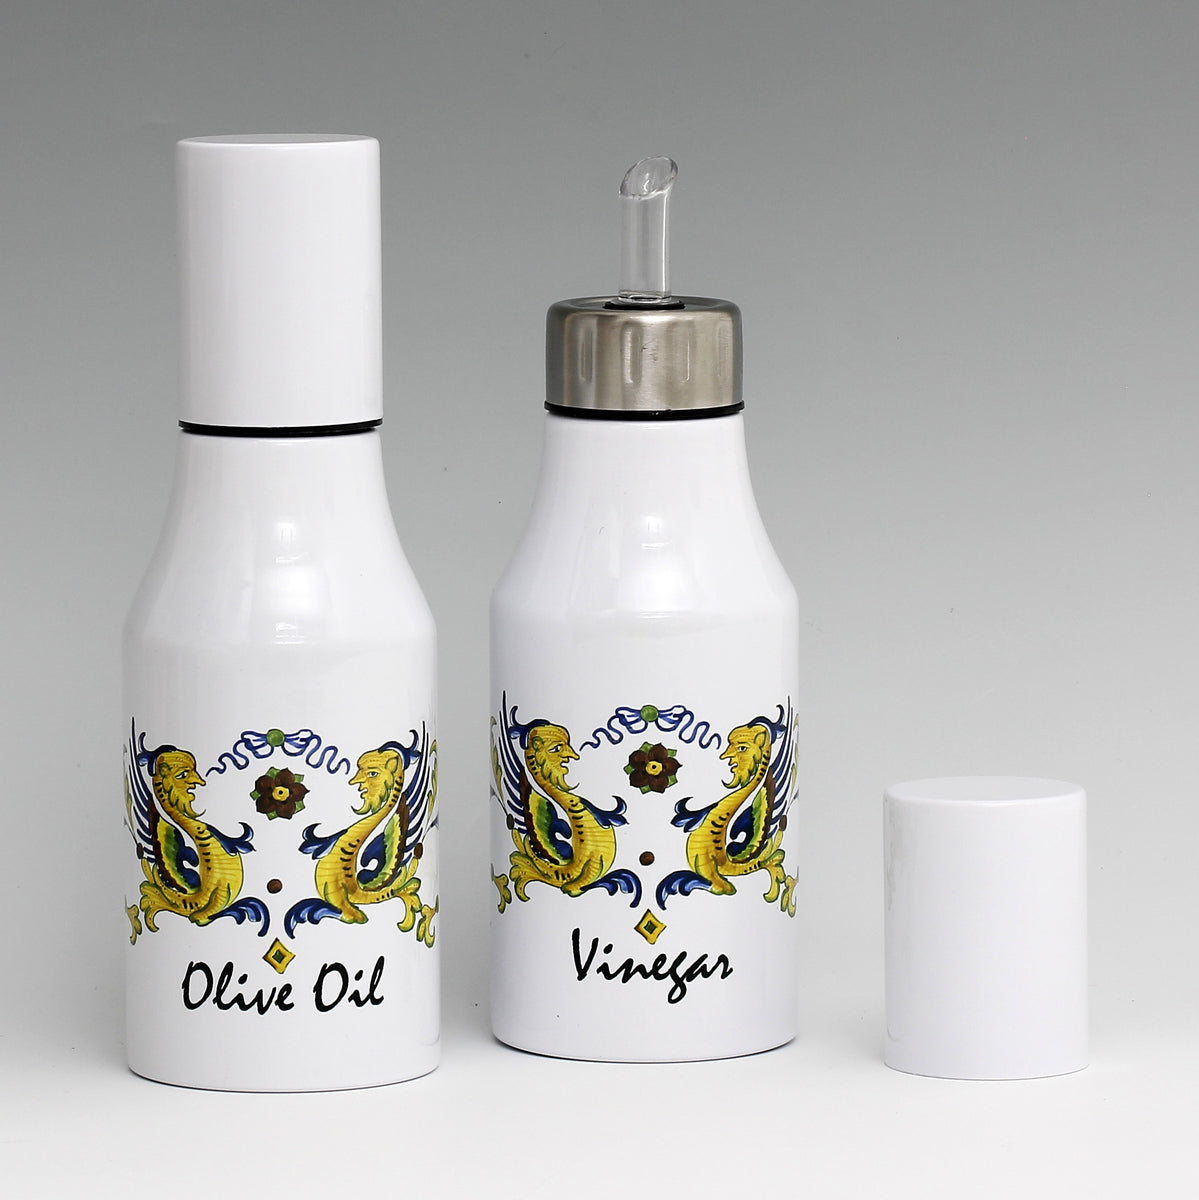 SUBLIMART: Bundle Oil & Vinegar Dispensers with non-drip pourer and dust cover cap (Design 03)